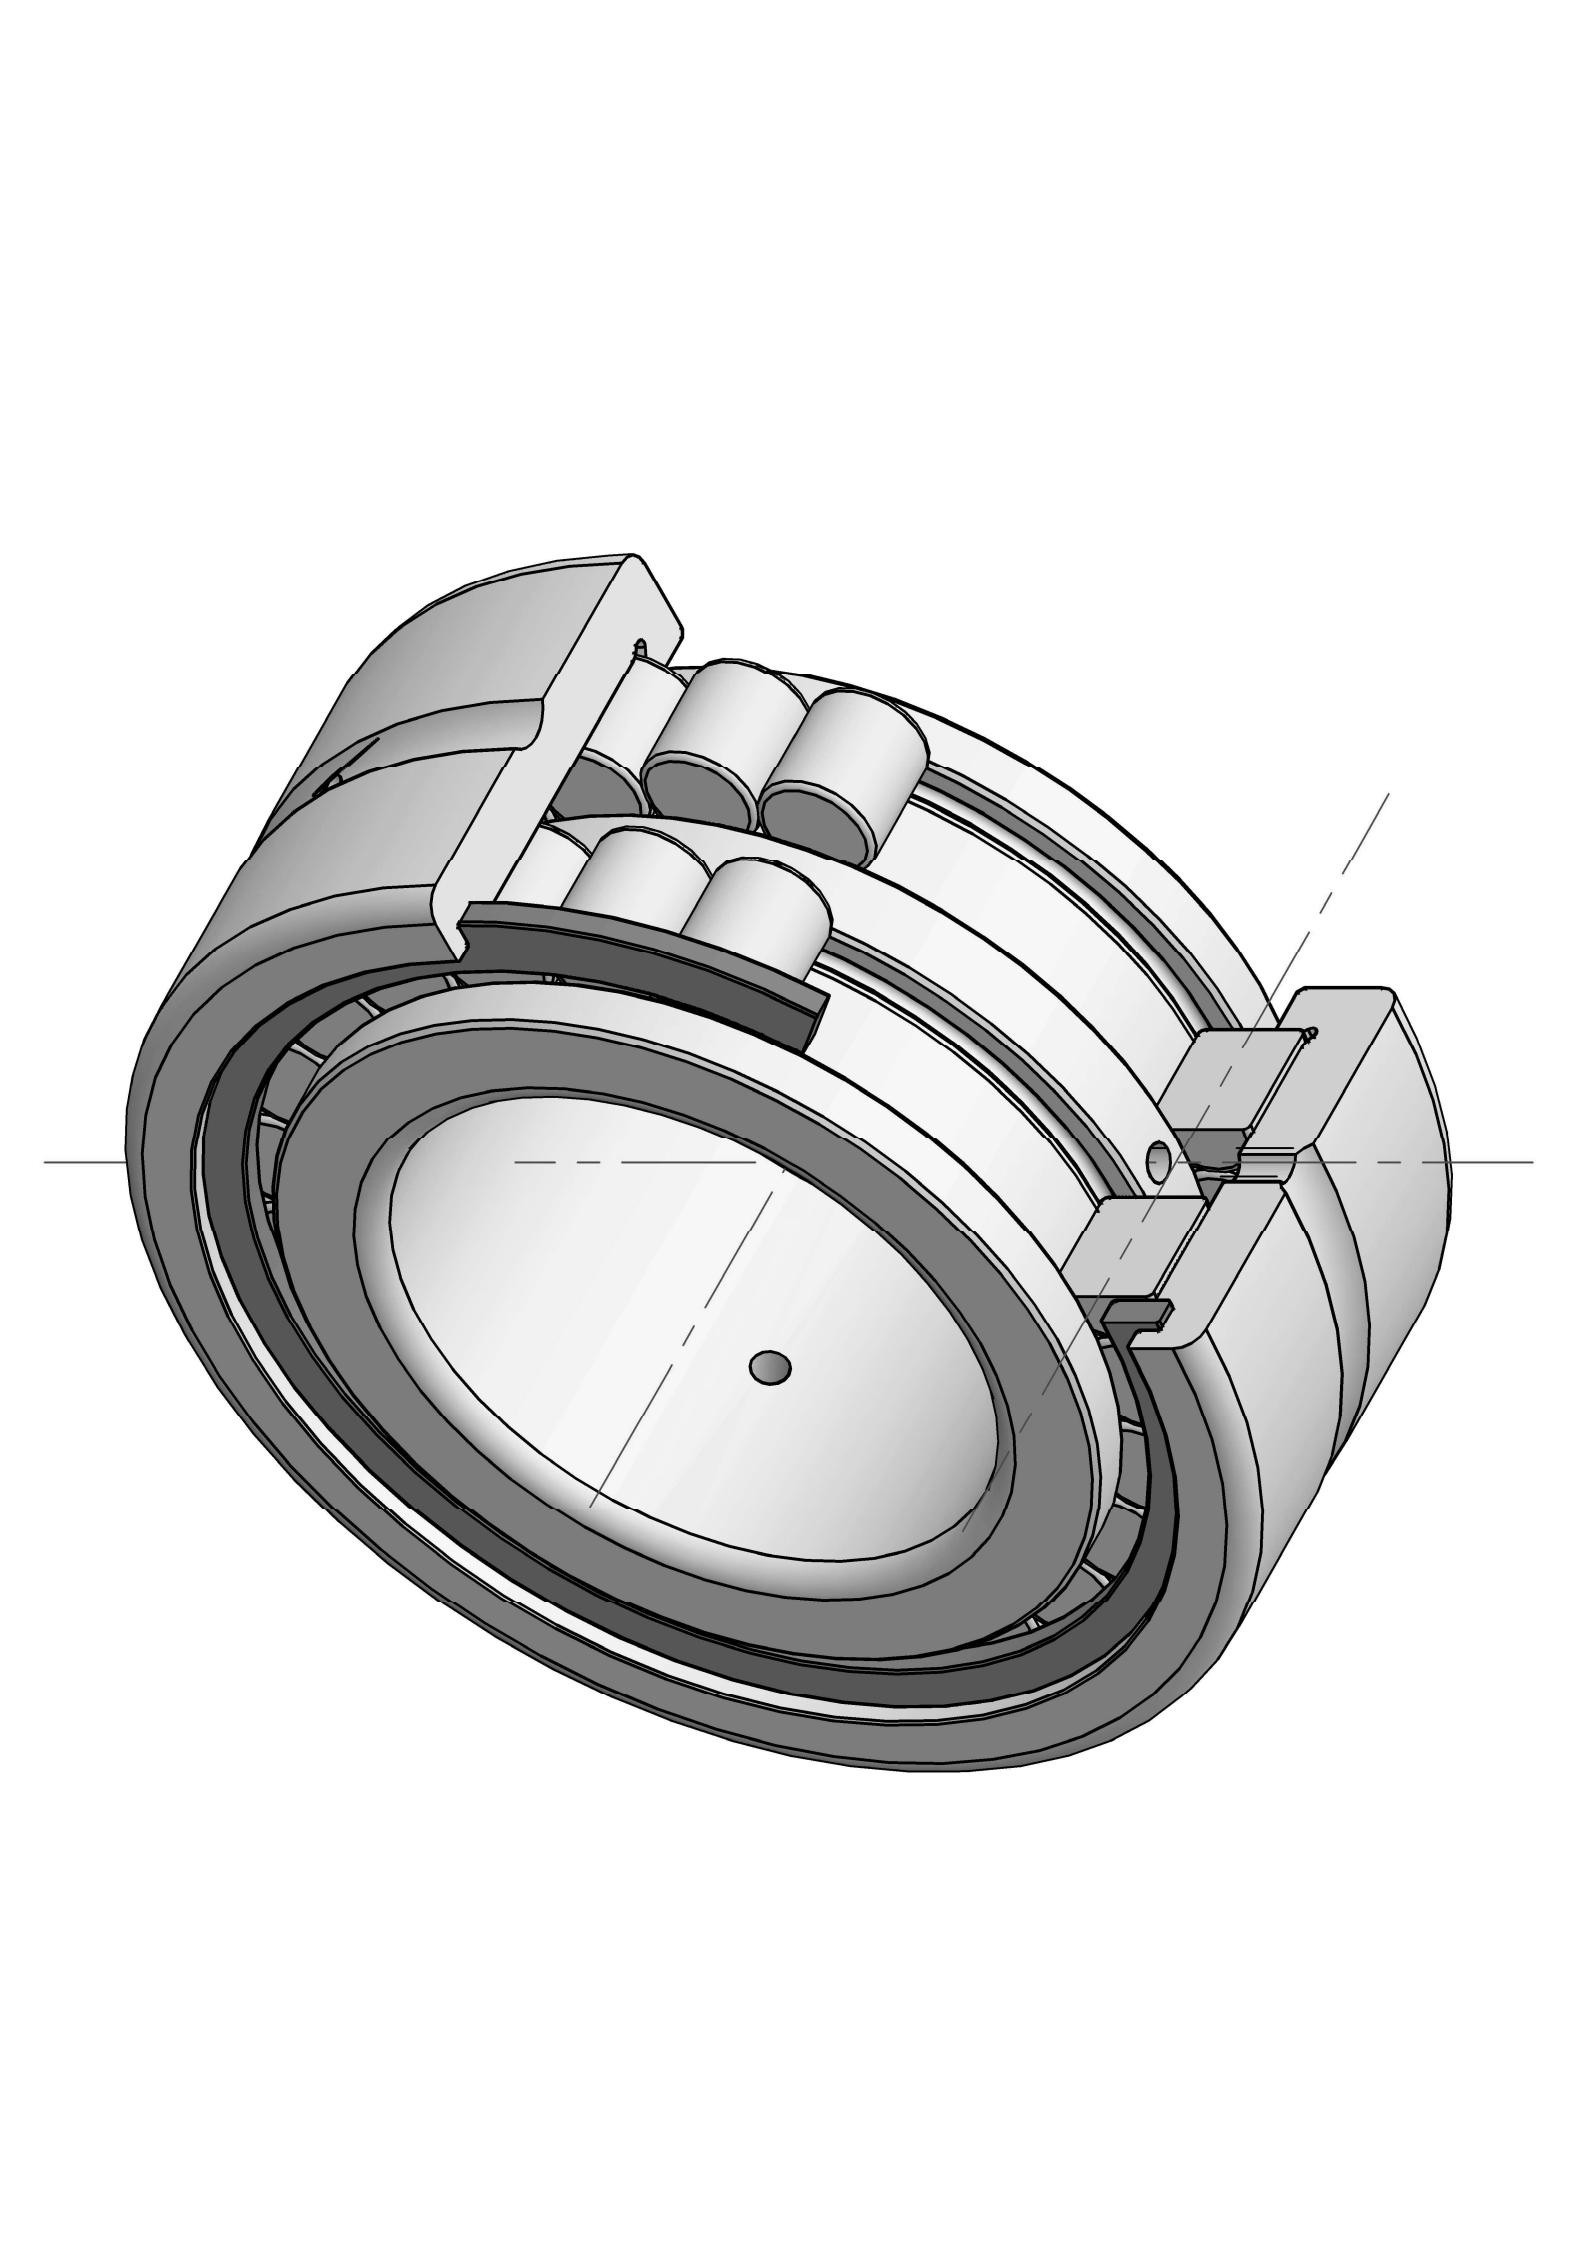 SL185004 lālani pālua piha piha i nā bearings huila cylindrical